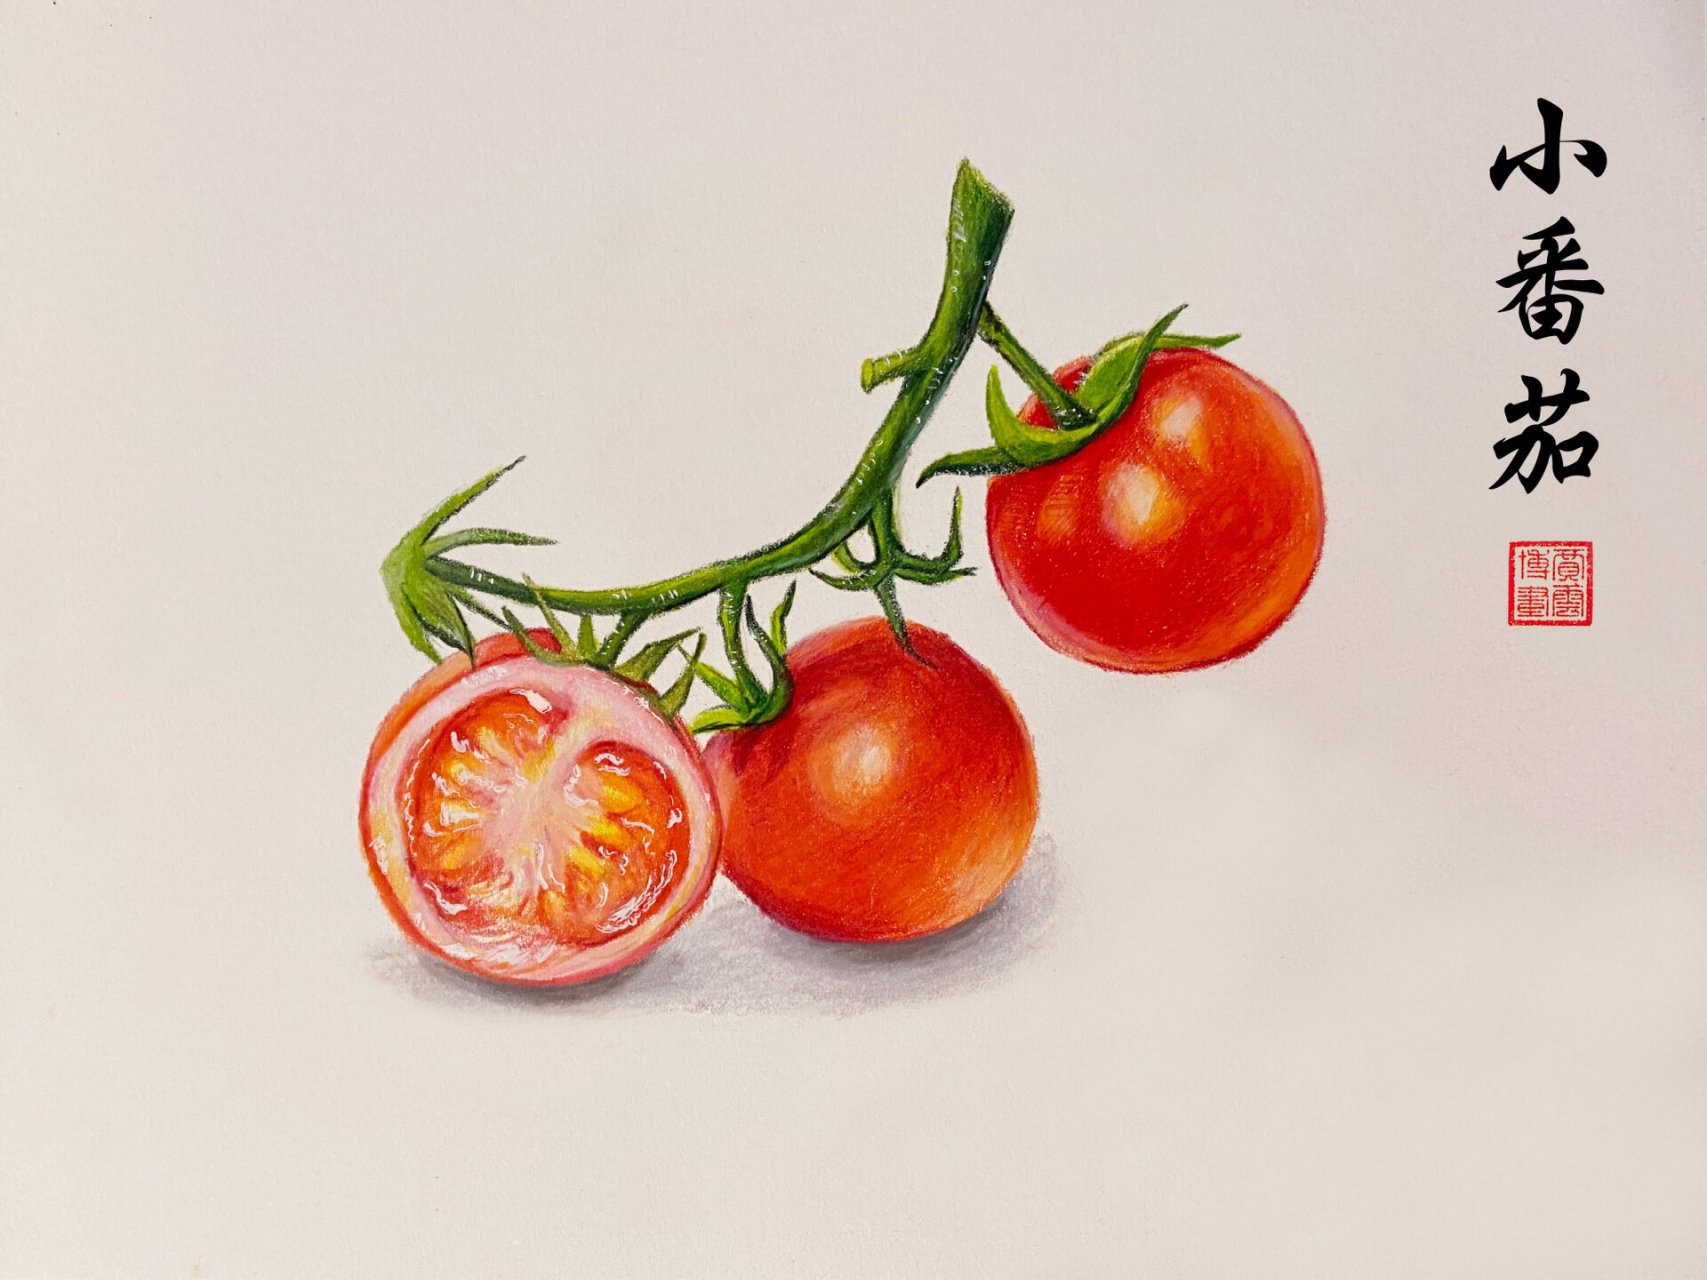 【彩铅画】小番茄(内附步骤图)